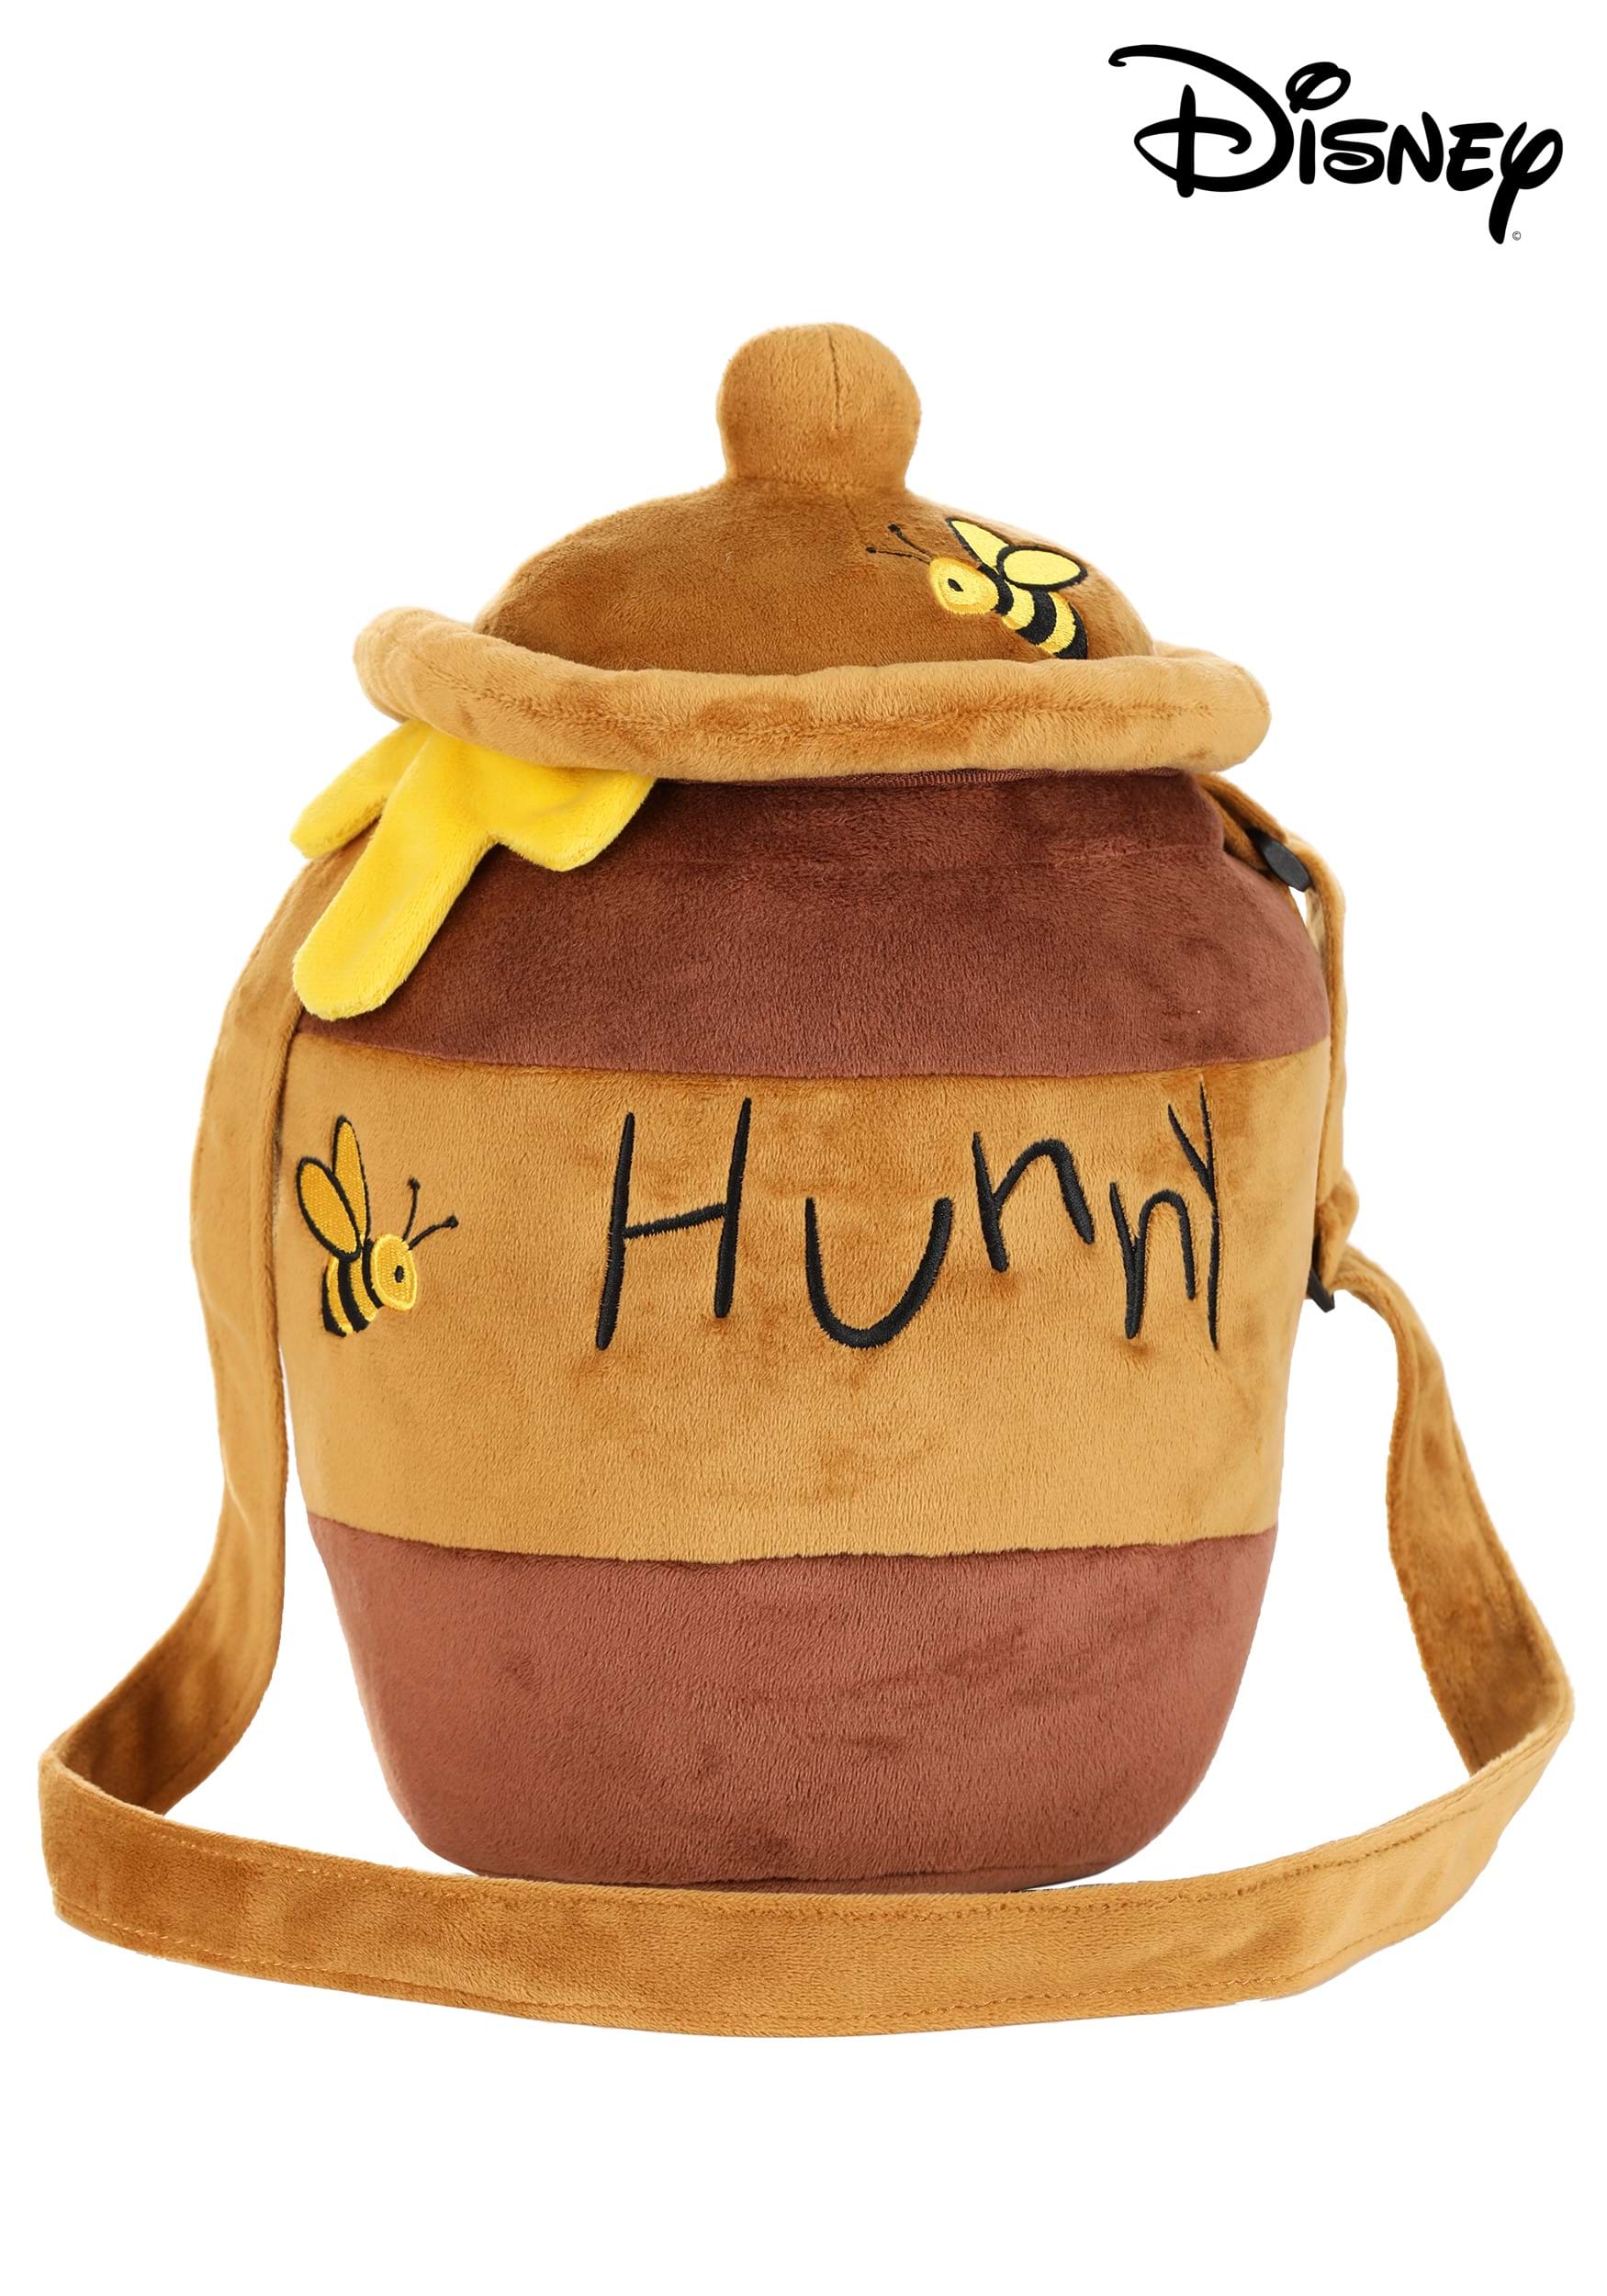 How To: Make a Winnie the Pooh 'Hunny' Pot